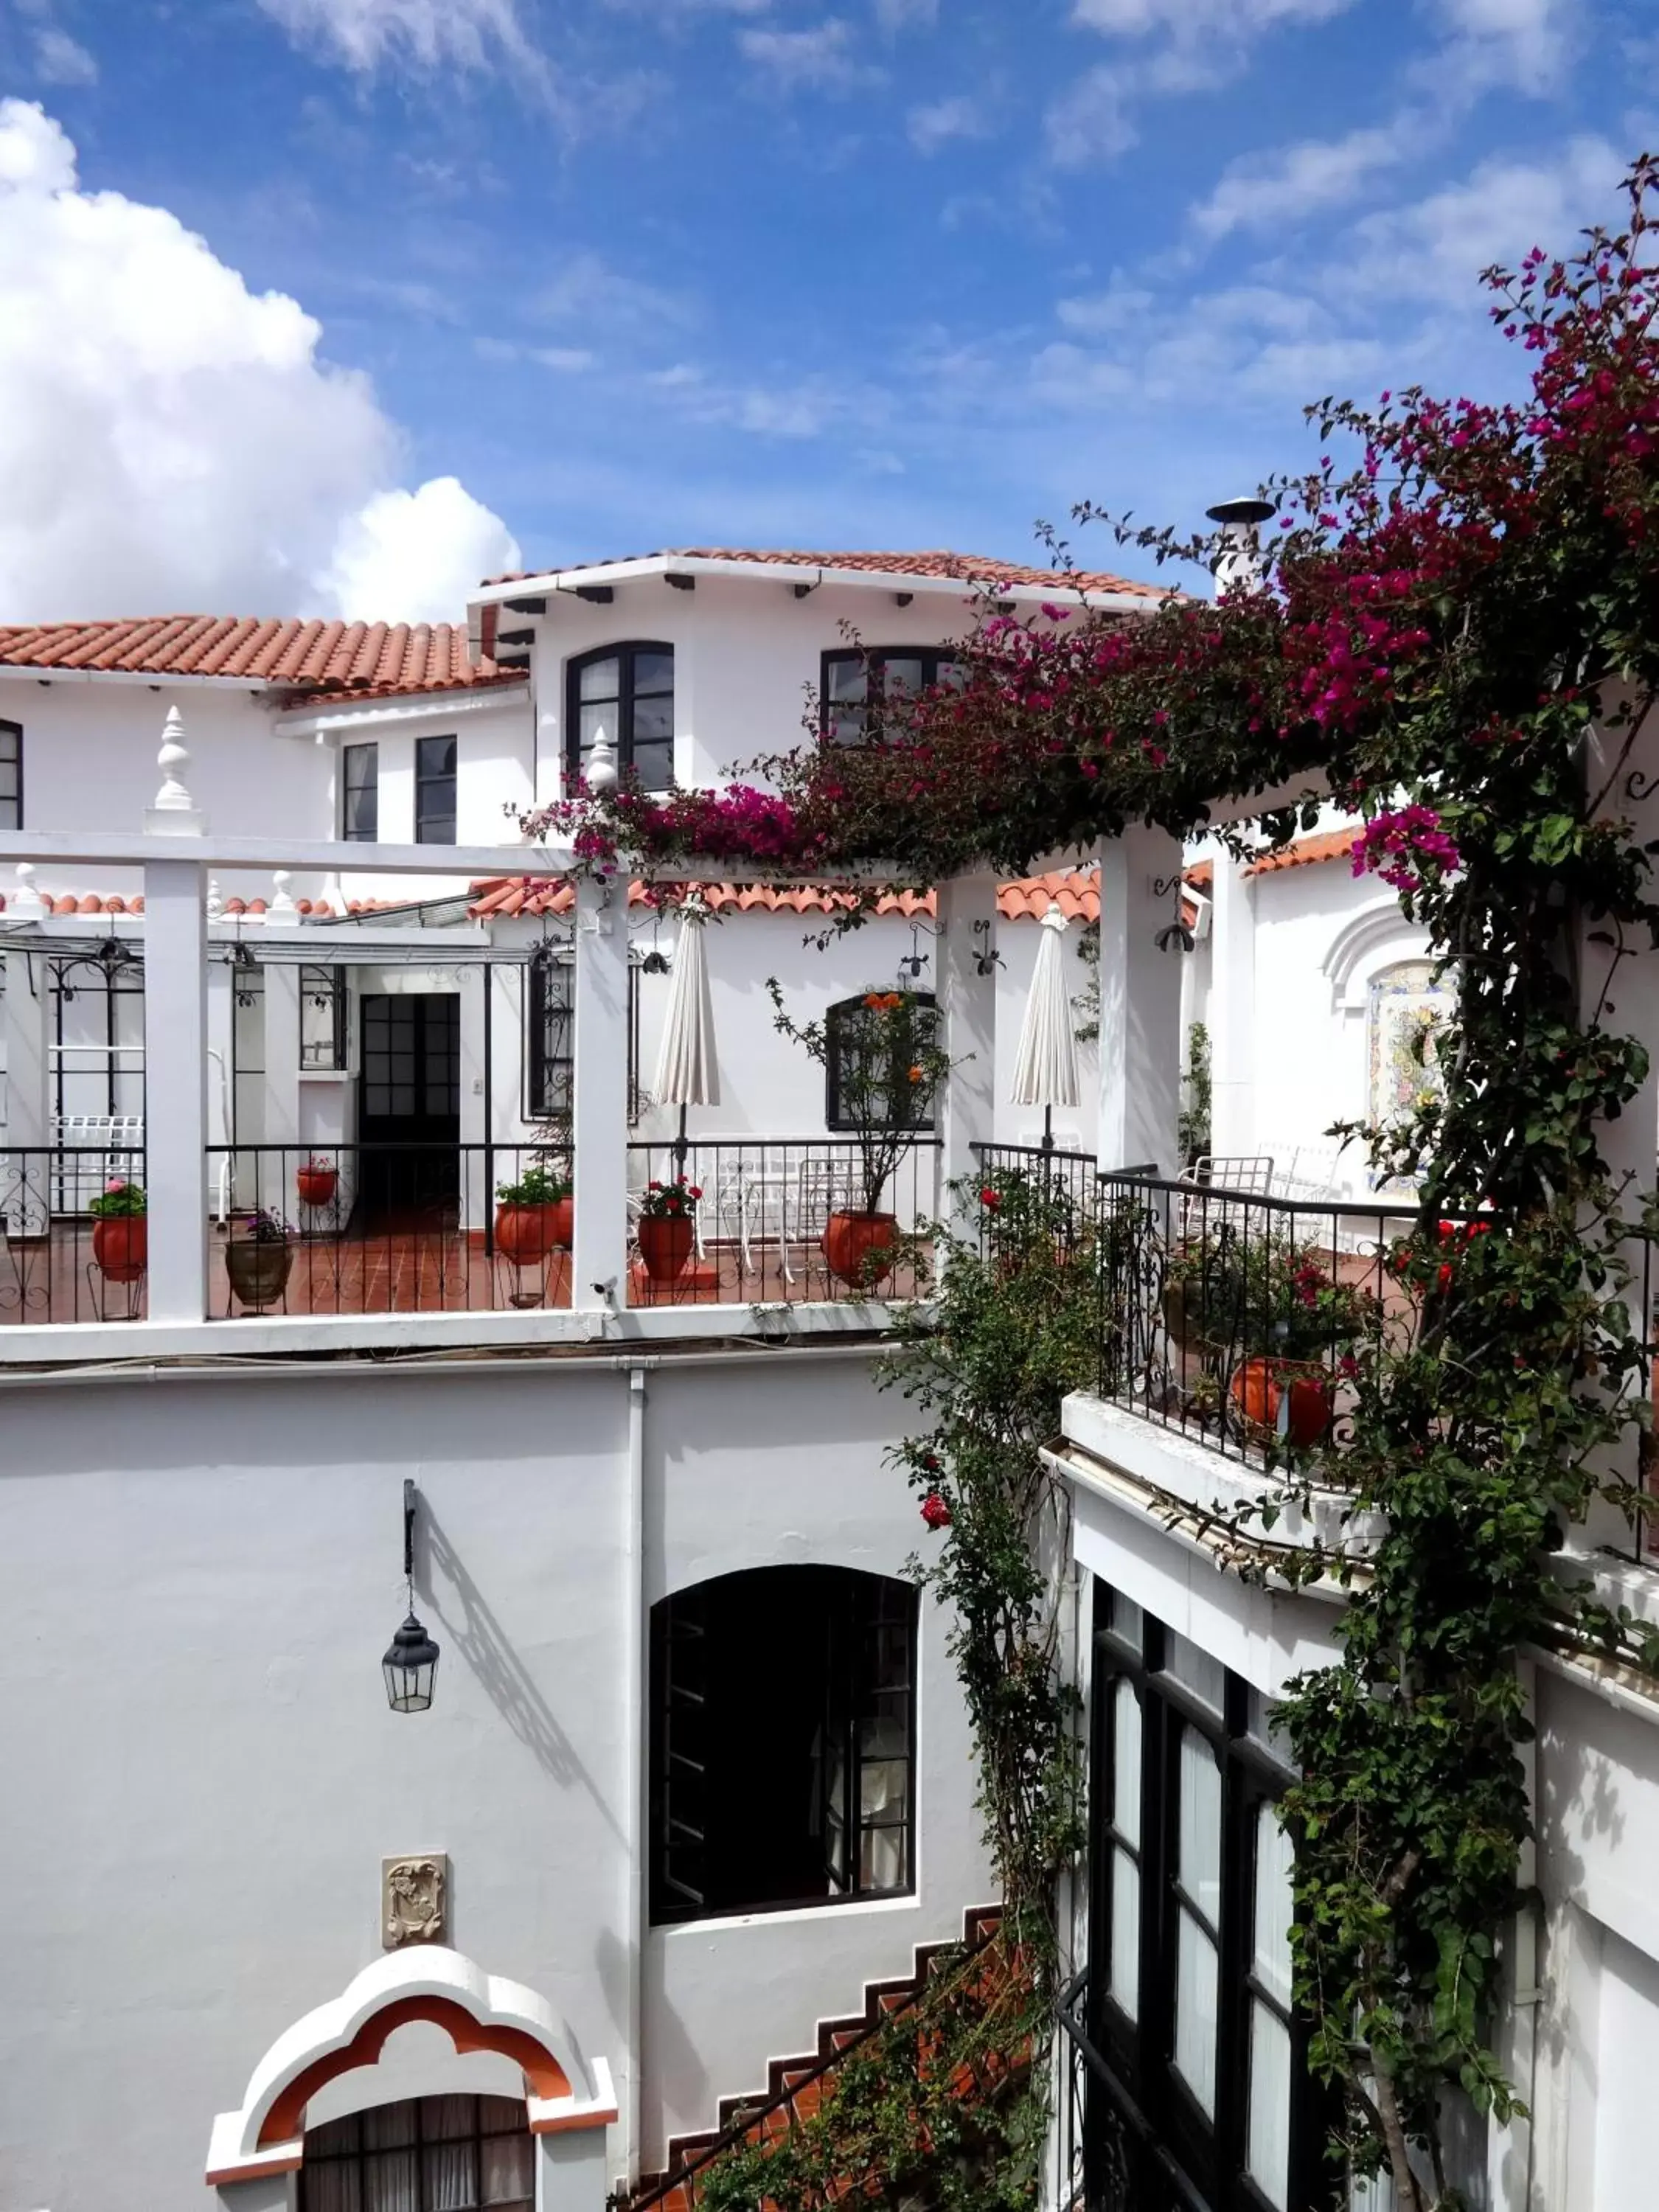 Garden view in El Hotel de Su Merced